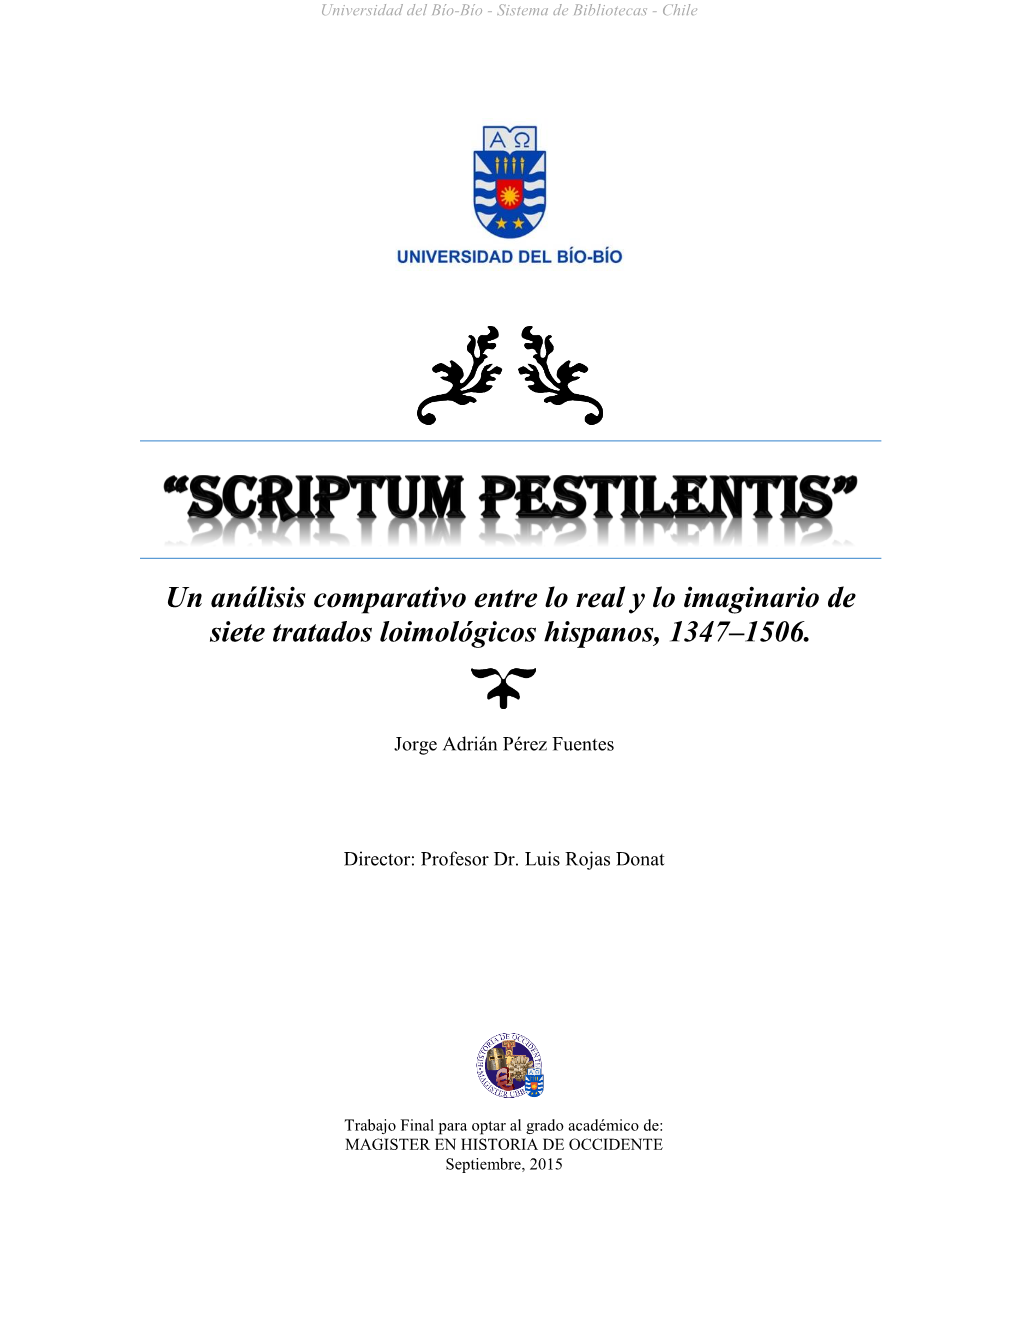 “Scriptum Pestilentis”